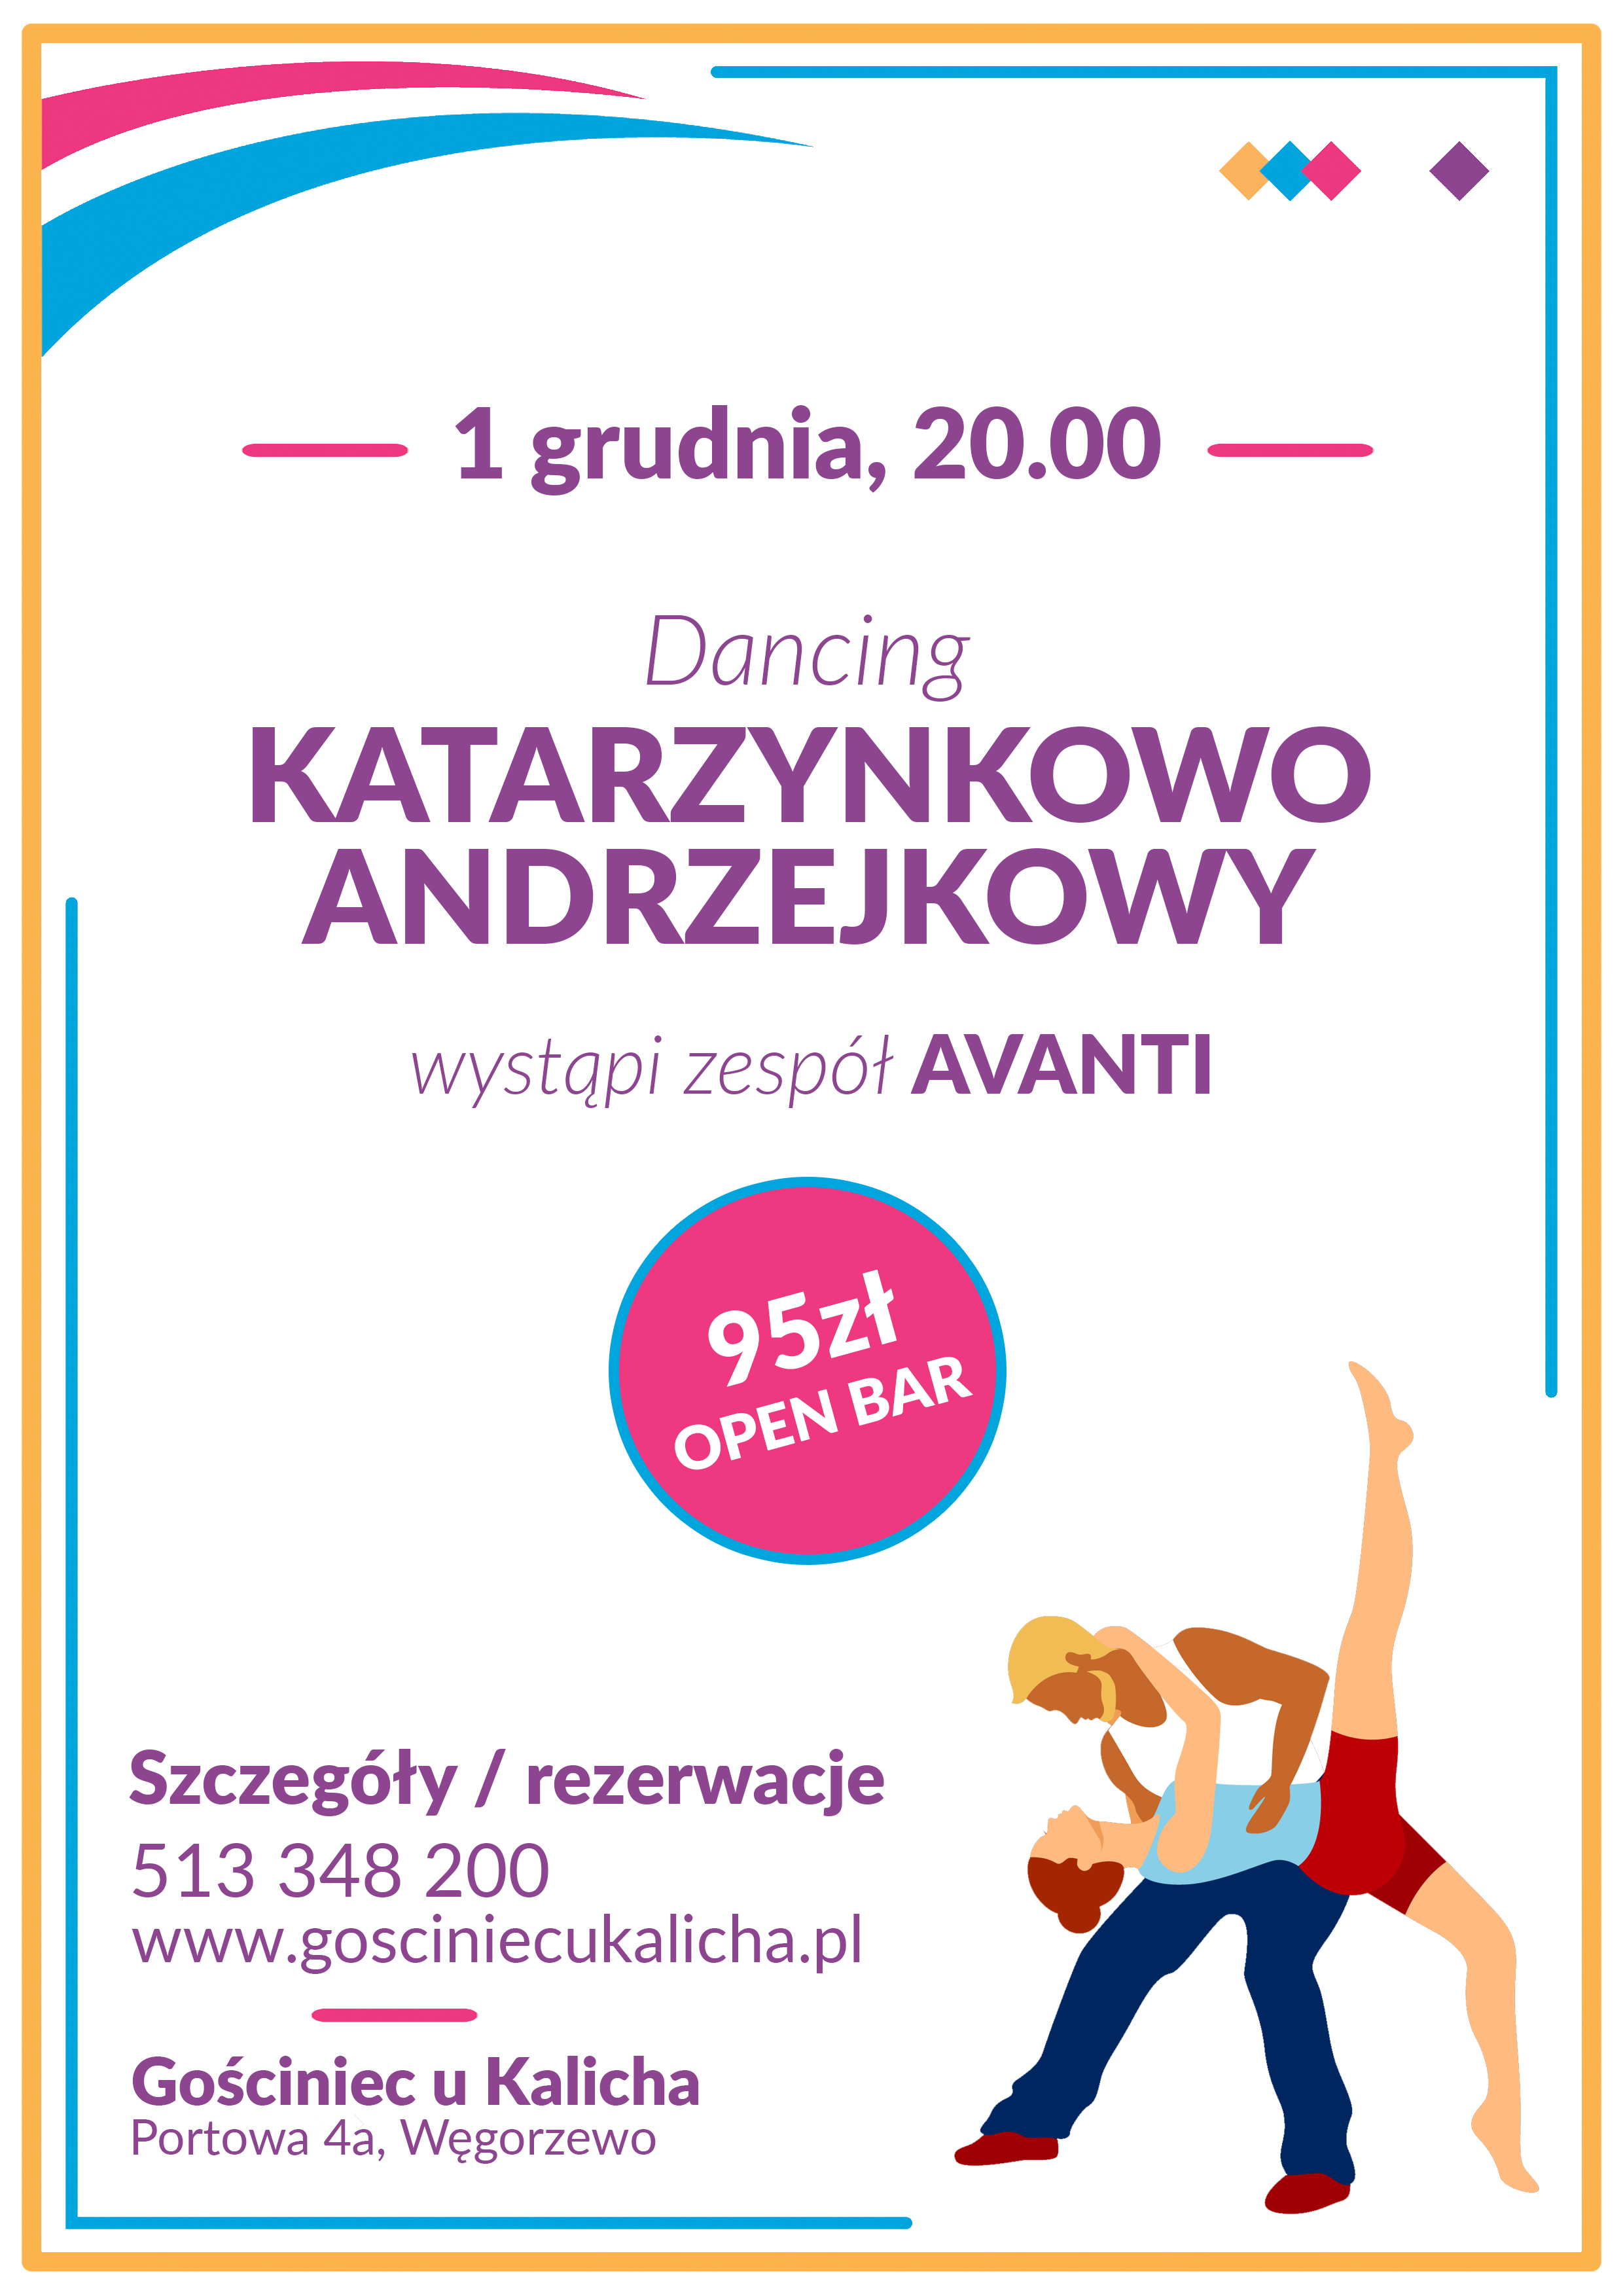 Katarzynkowo-Andrzejkowy Dancing z niespodzianką